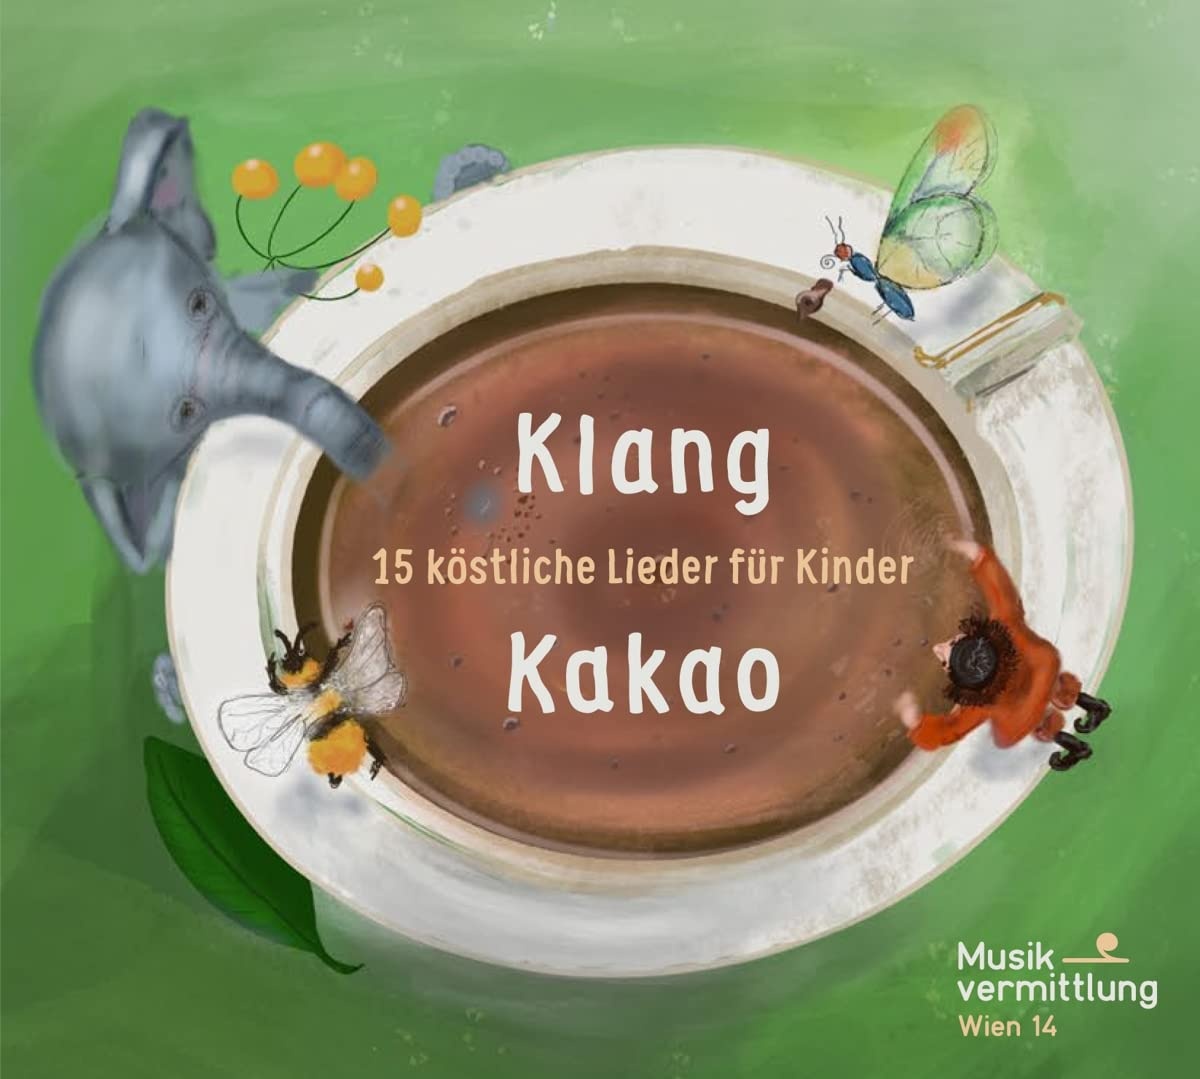 Klang Kakao: 15 Köstliche Lieder Für Kinder (Neu differenzbesteuert)